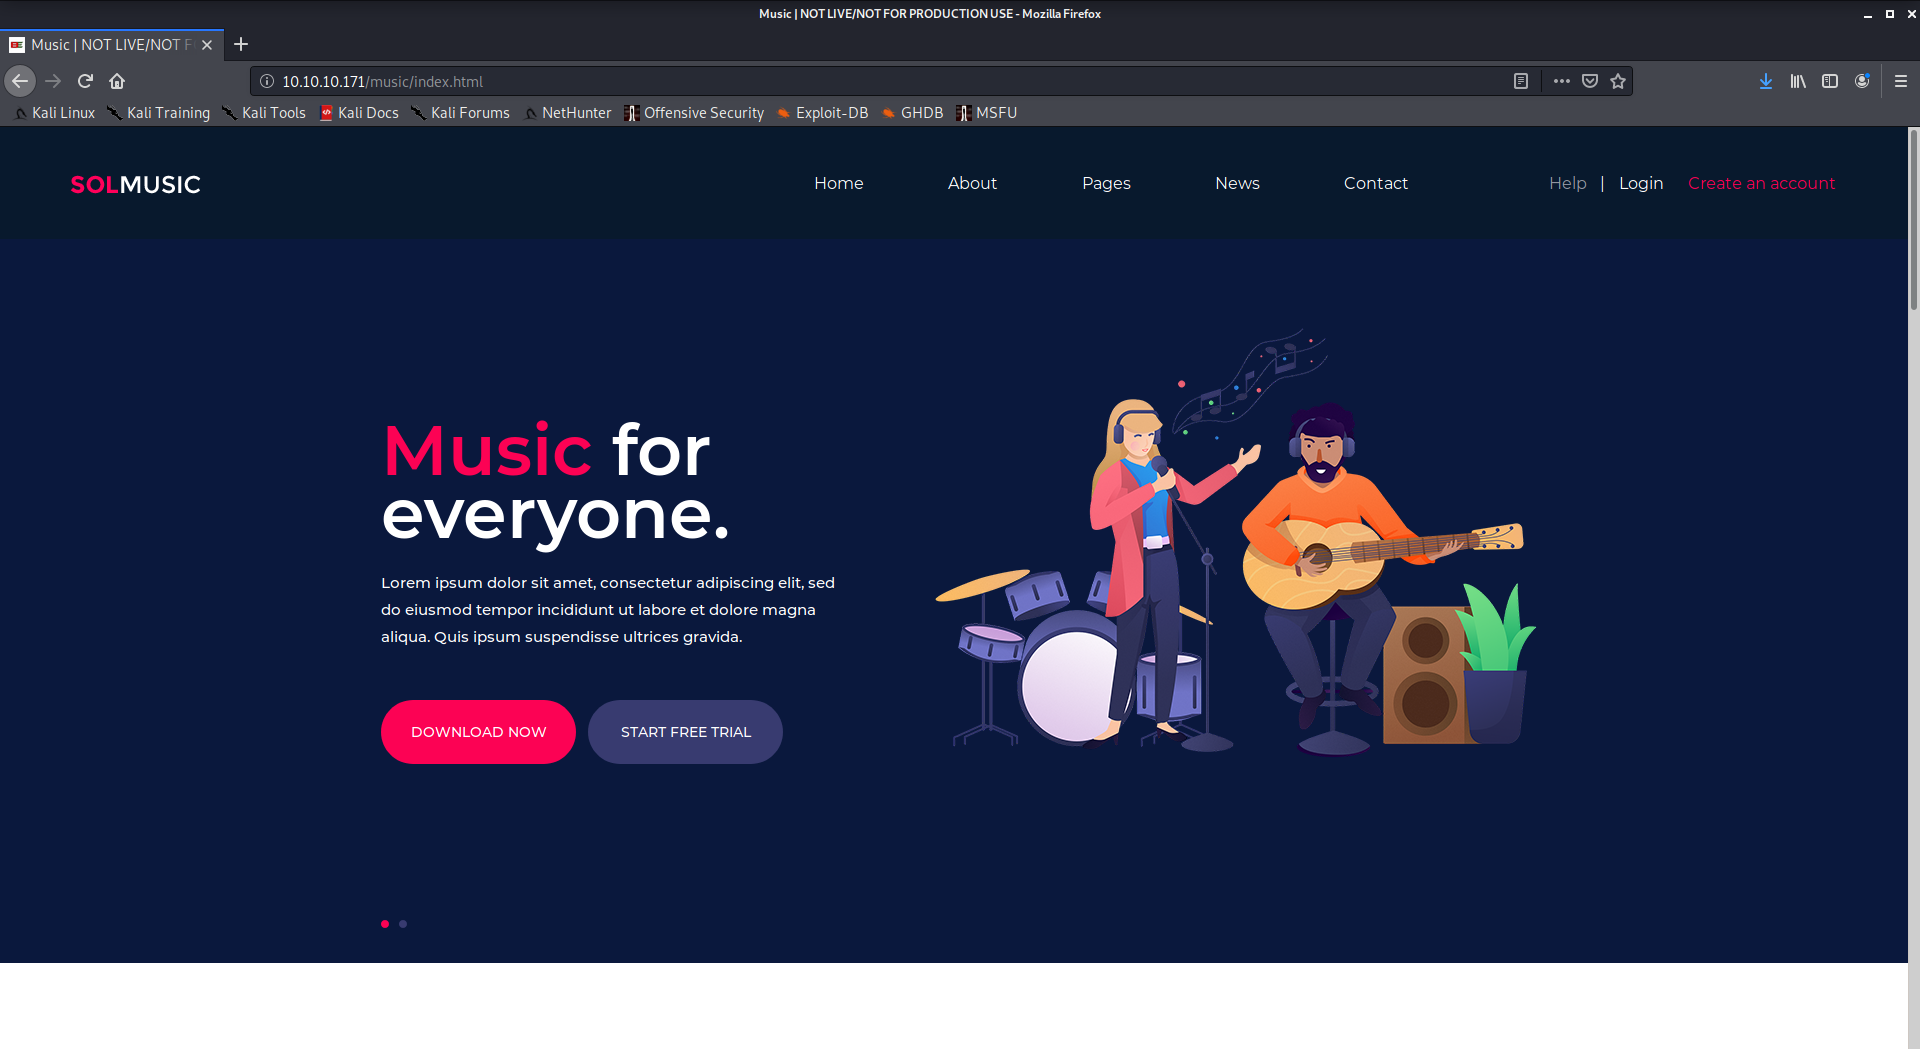 screenshot-music-site.png|300,300